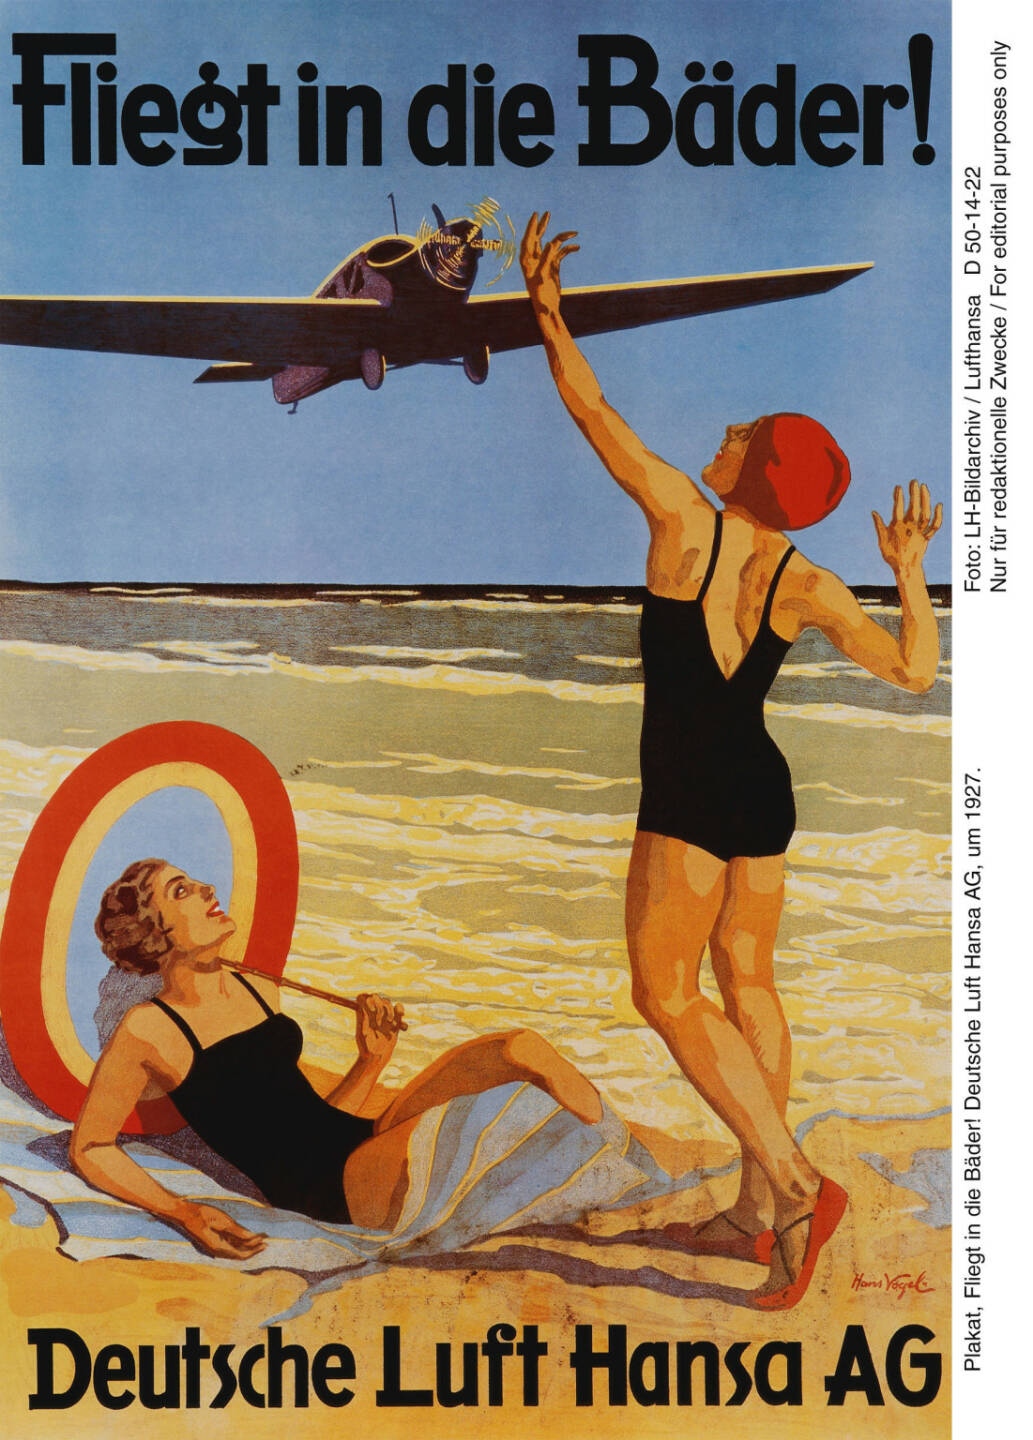 Plakat, Fliegt in die Baeder! Deutsche Lufthansa AG, um 1927. Foto: LH-Bildarchiv Lufthansa

